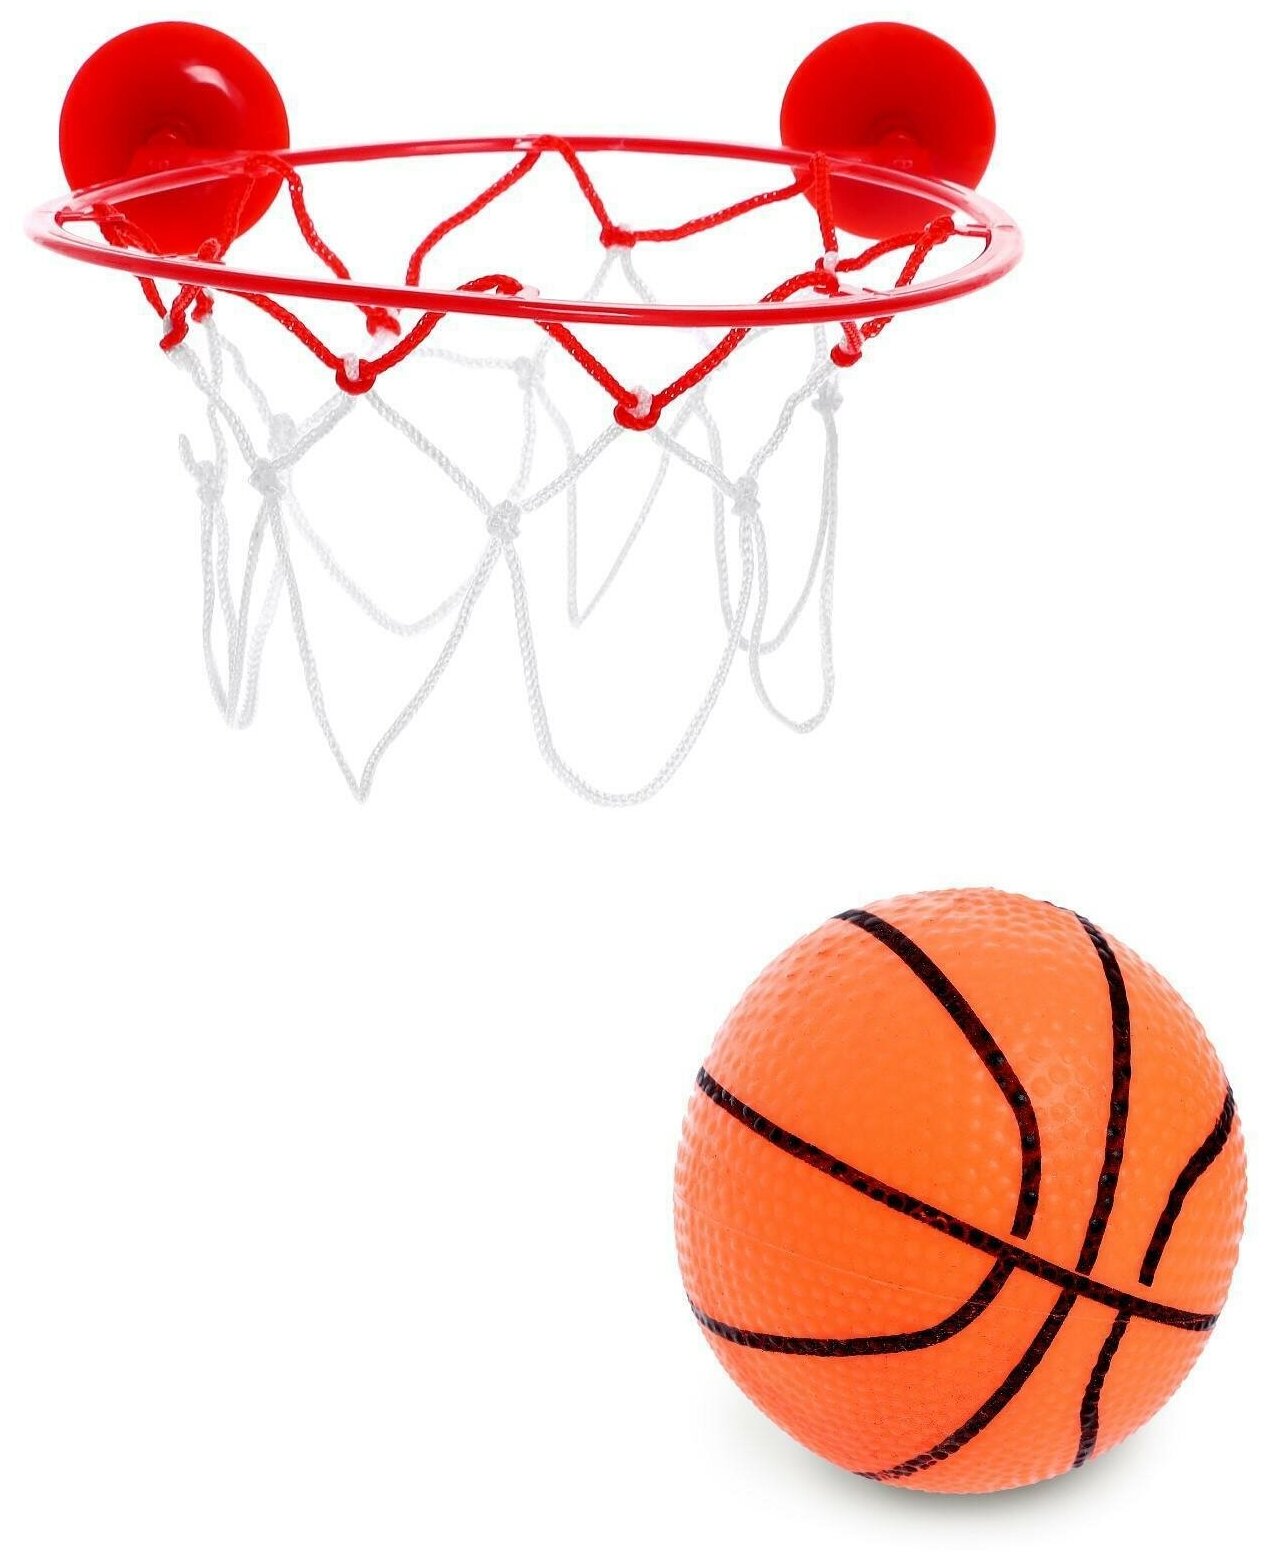 Баскетбол "Бросок", крепится на присоски / спортивный инвентарь / активный отдых /аксессуары для спортивных игр / (1 шт.)